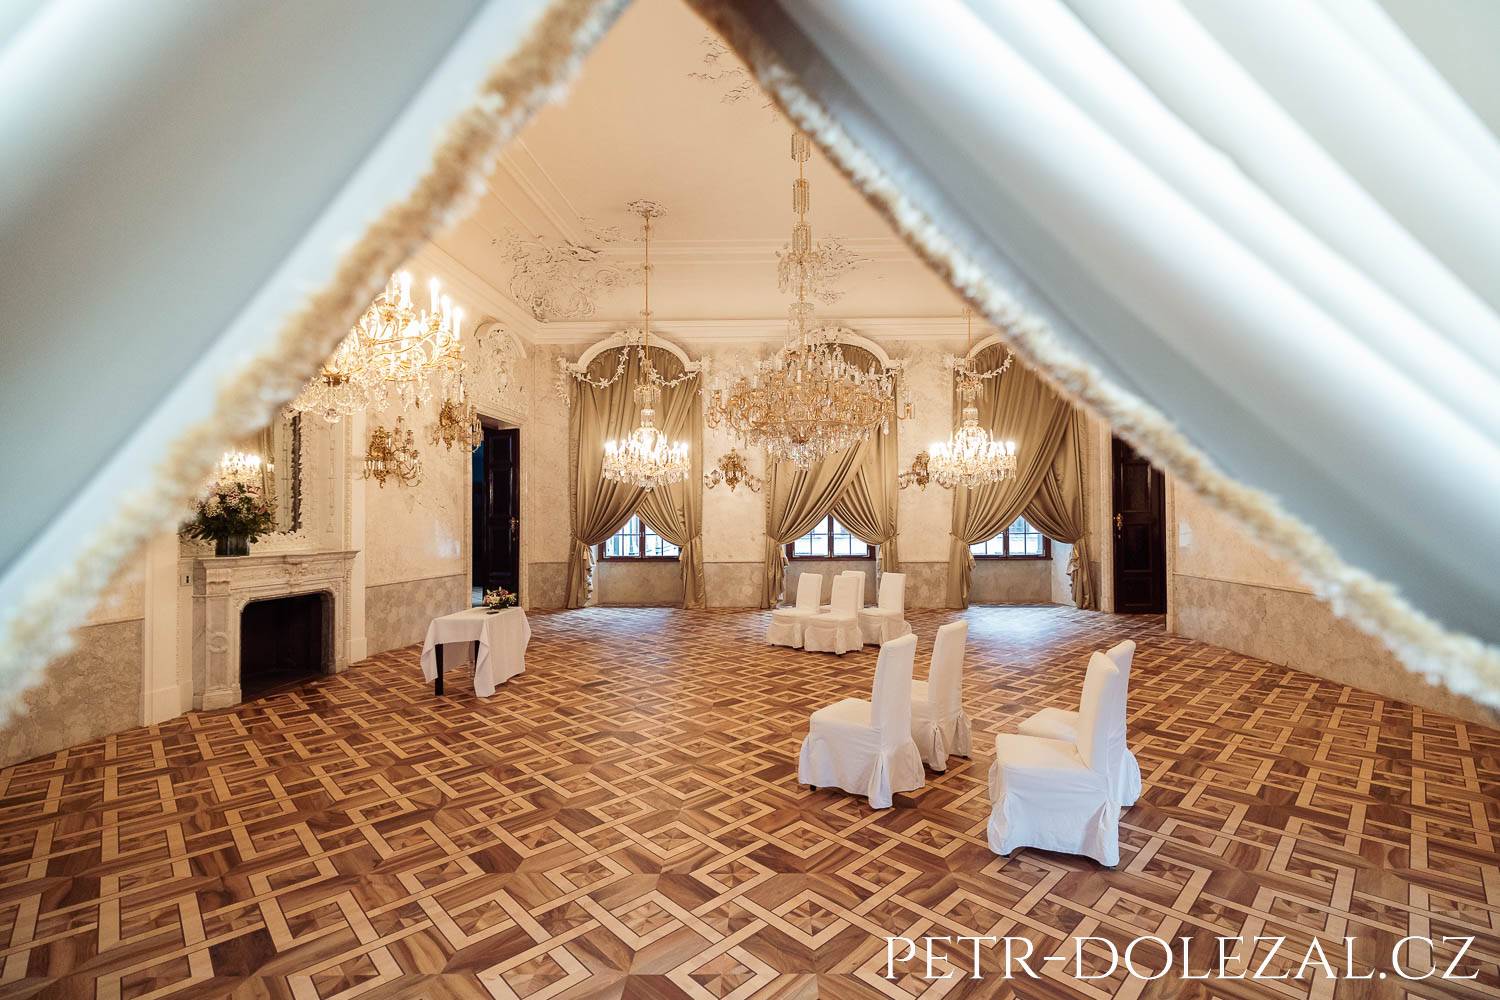 Mramorový sál v paláci Clam-Gallas z pohledu paparazza schovaného za závěsy, čekajícího na svatební obřad :-)